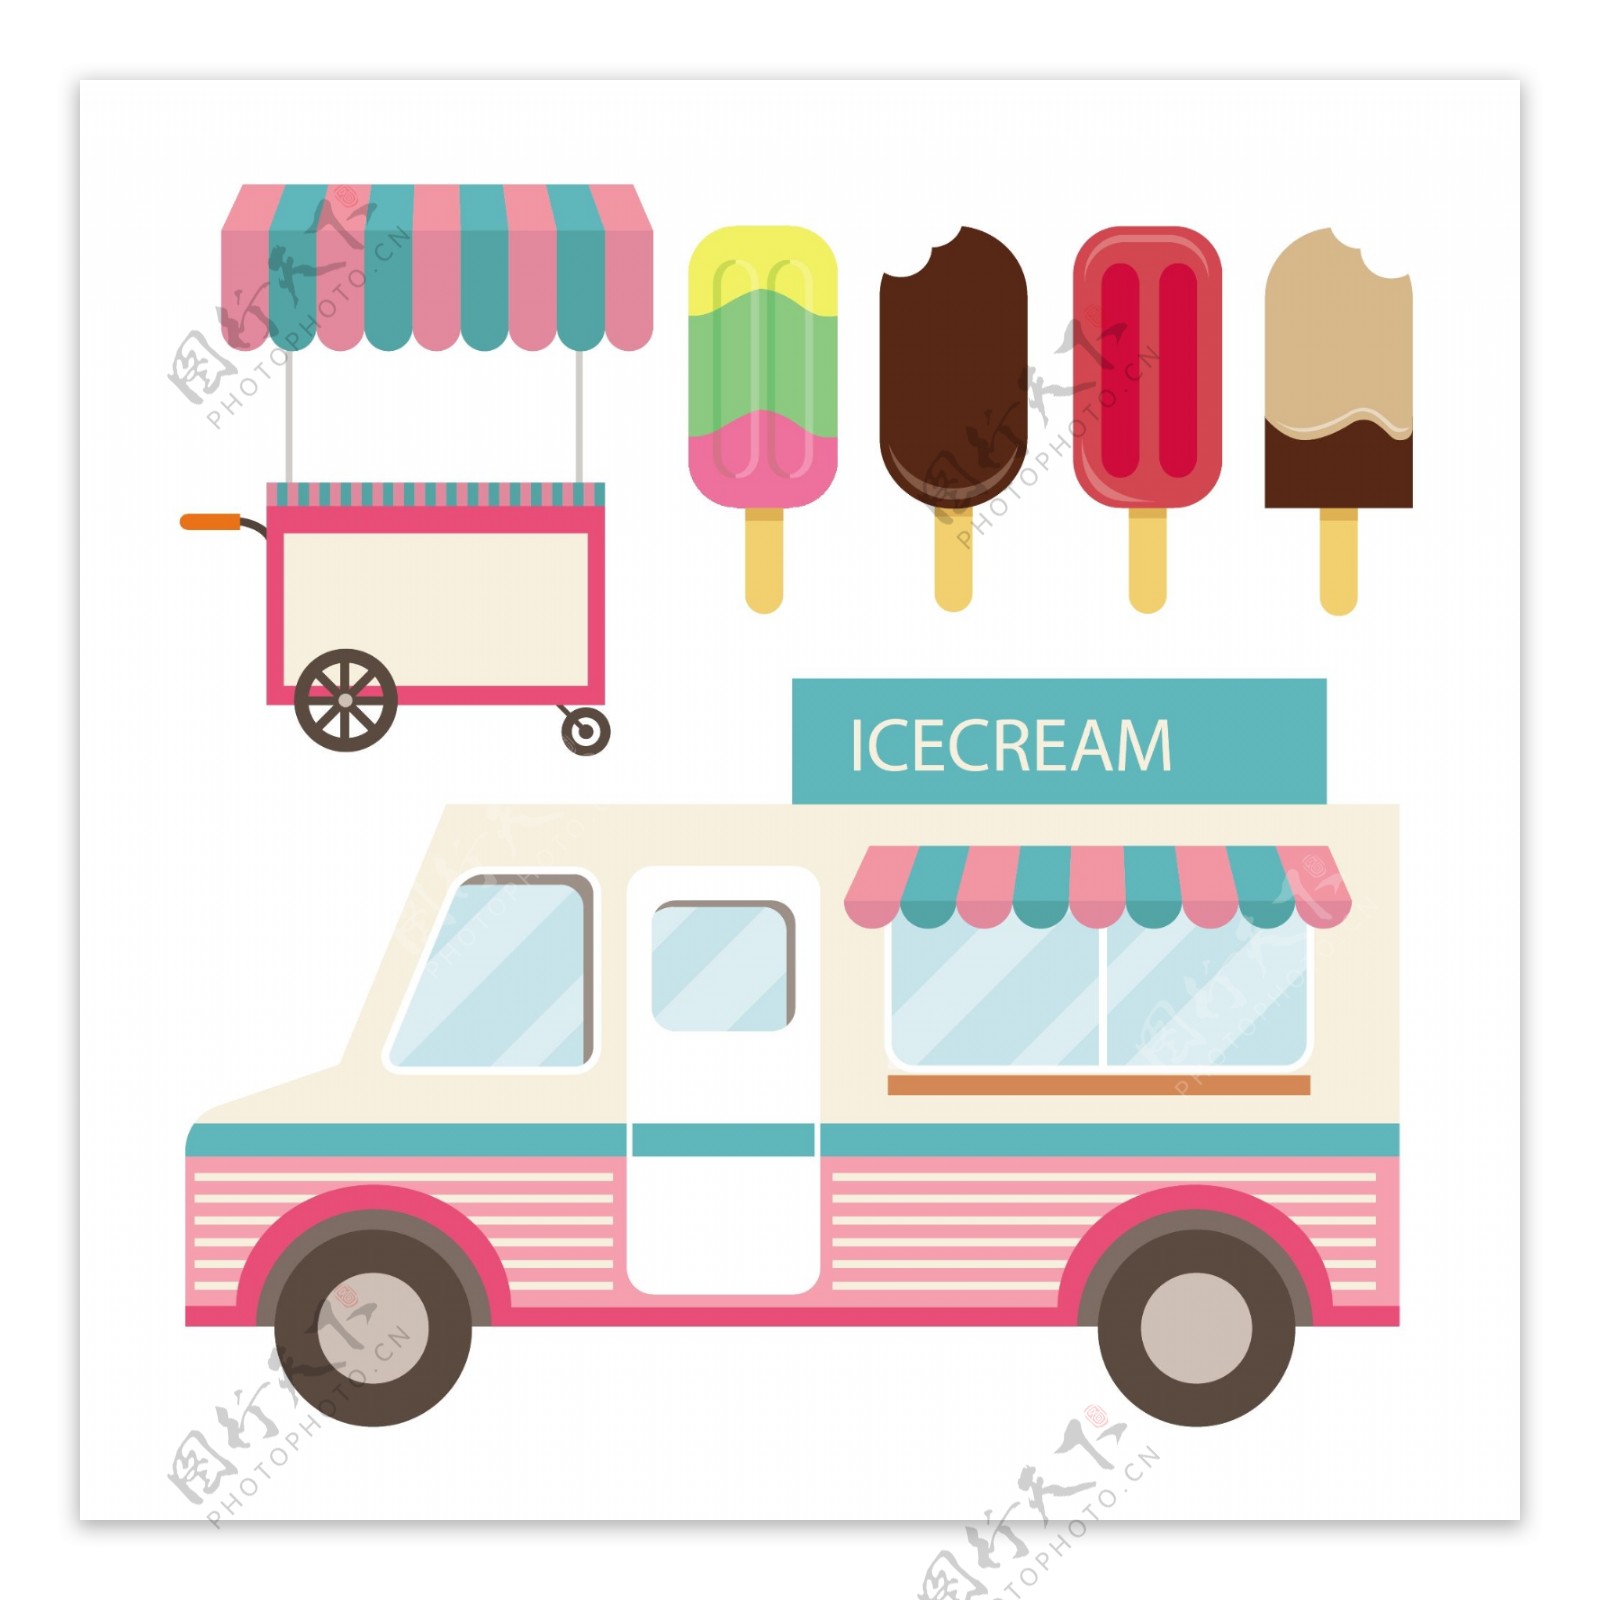 老式冰淇淋车推车